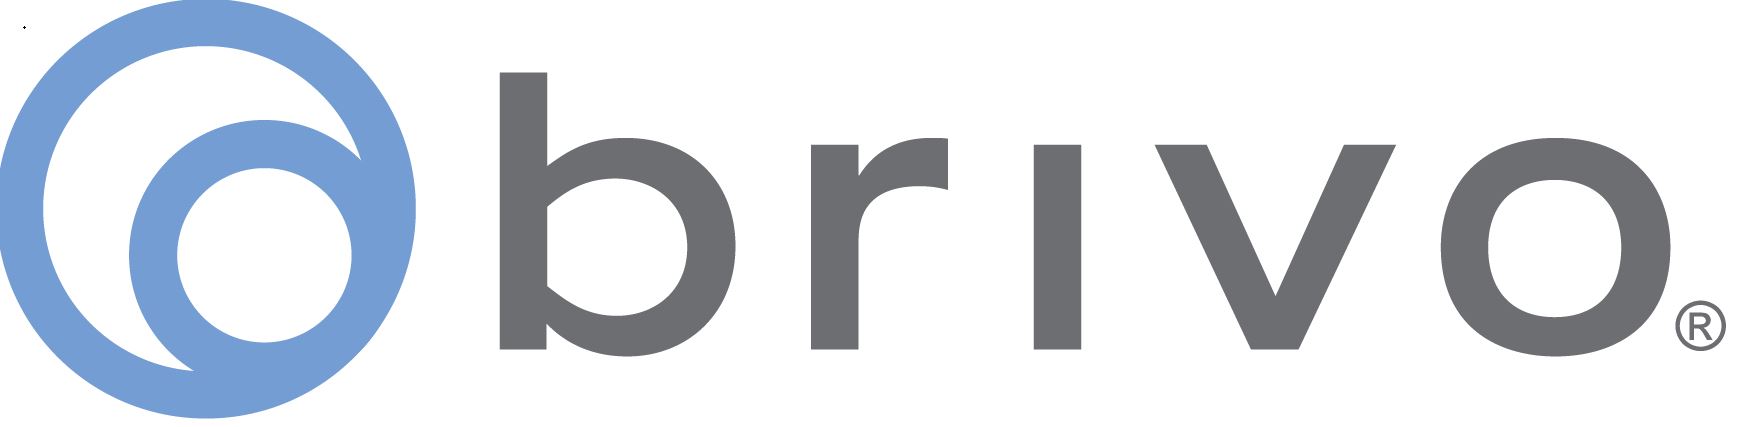 Brivo Logo